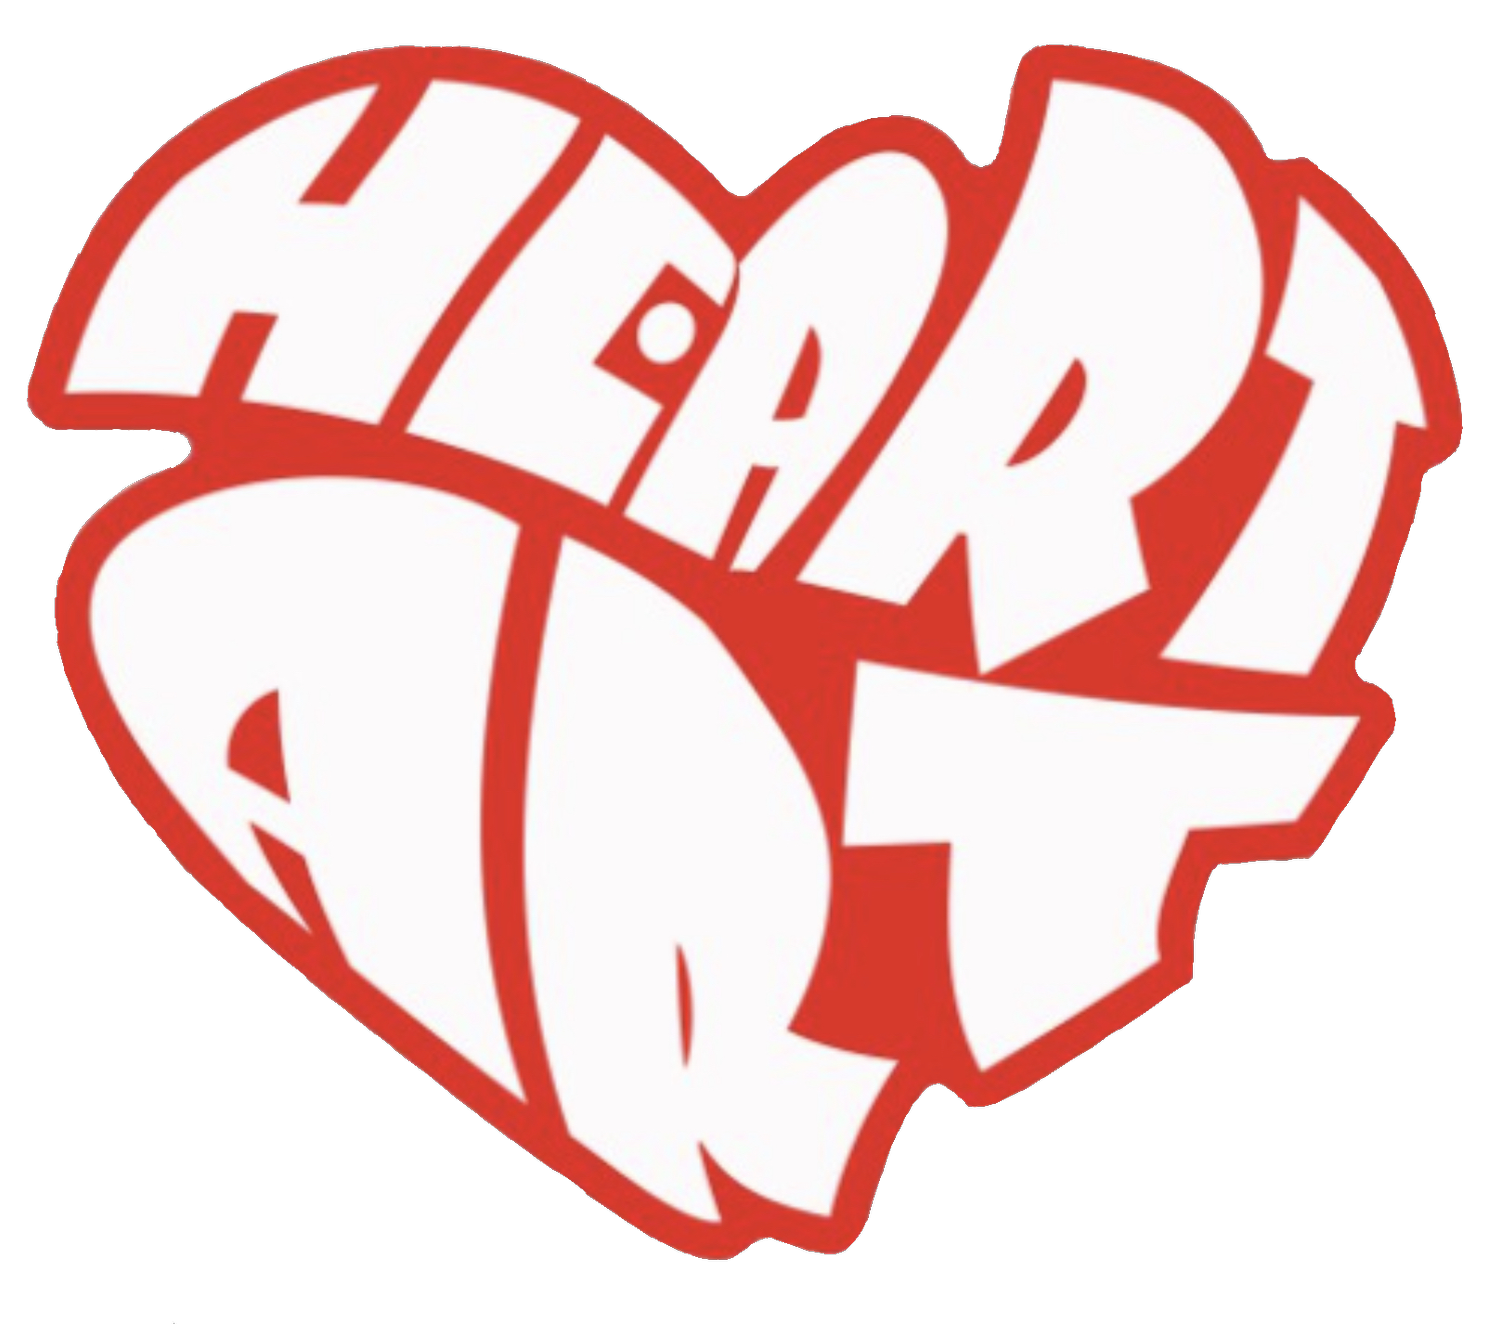 HeartArt Movement